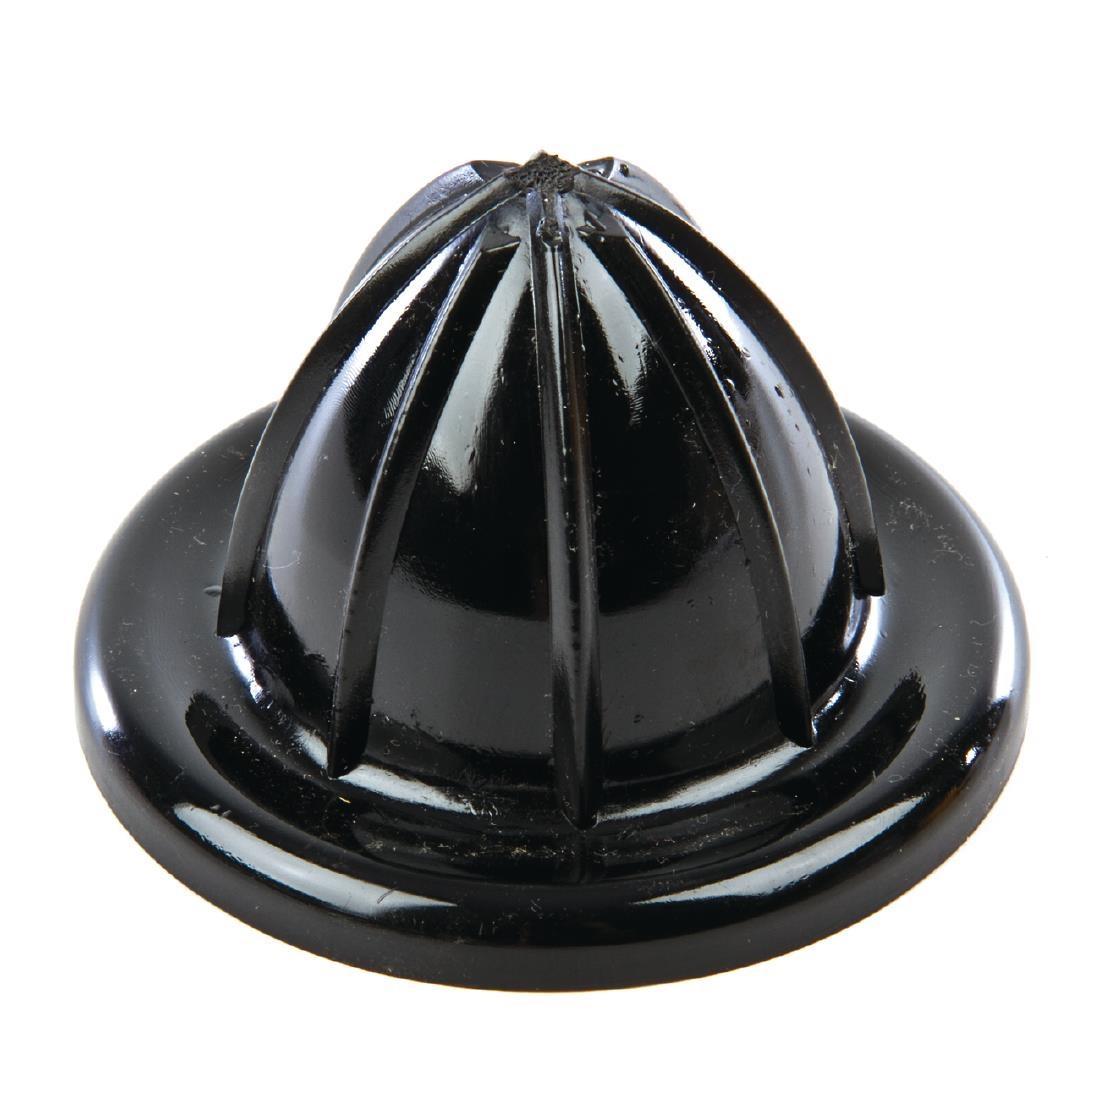 Black Squeezer Cone (Bulb) For Oranges - L395  - 1